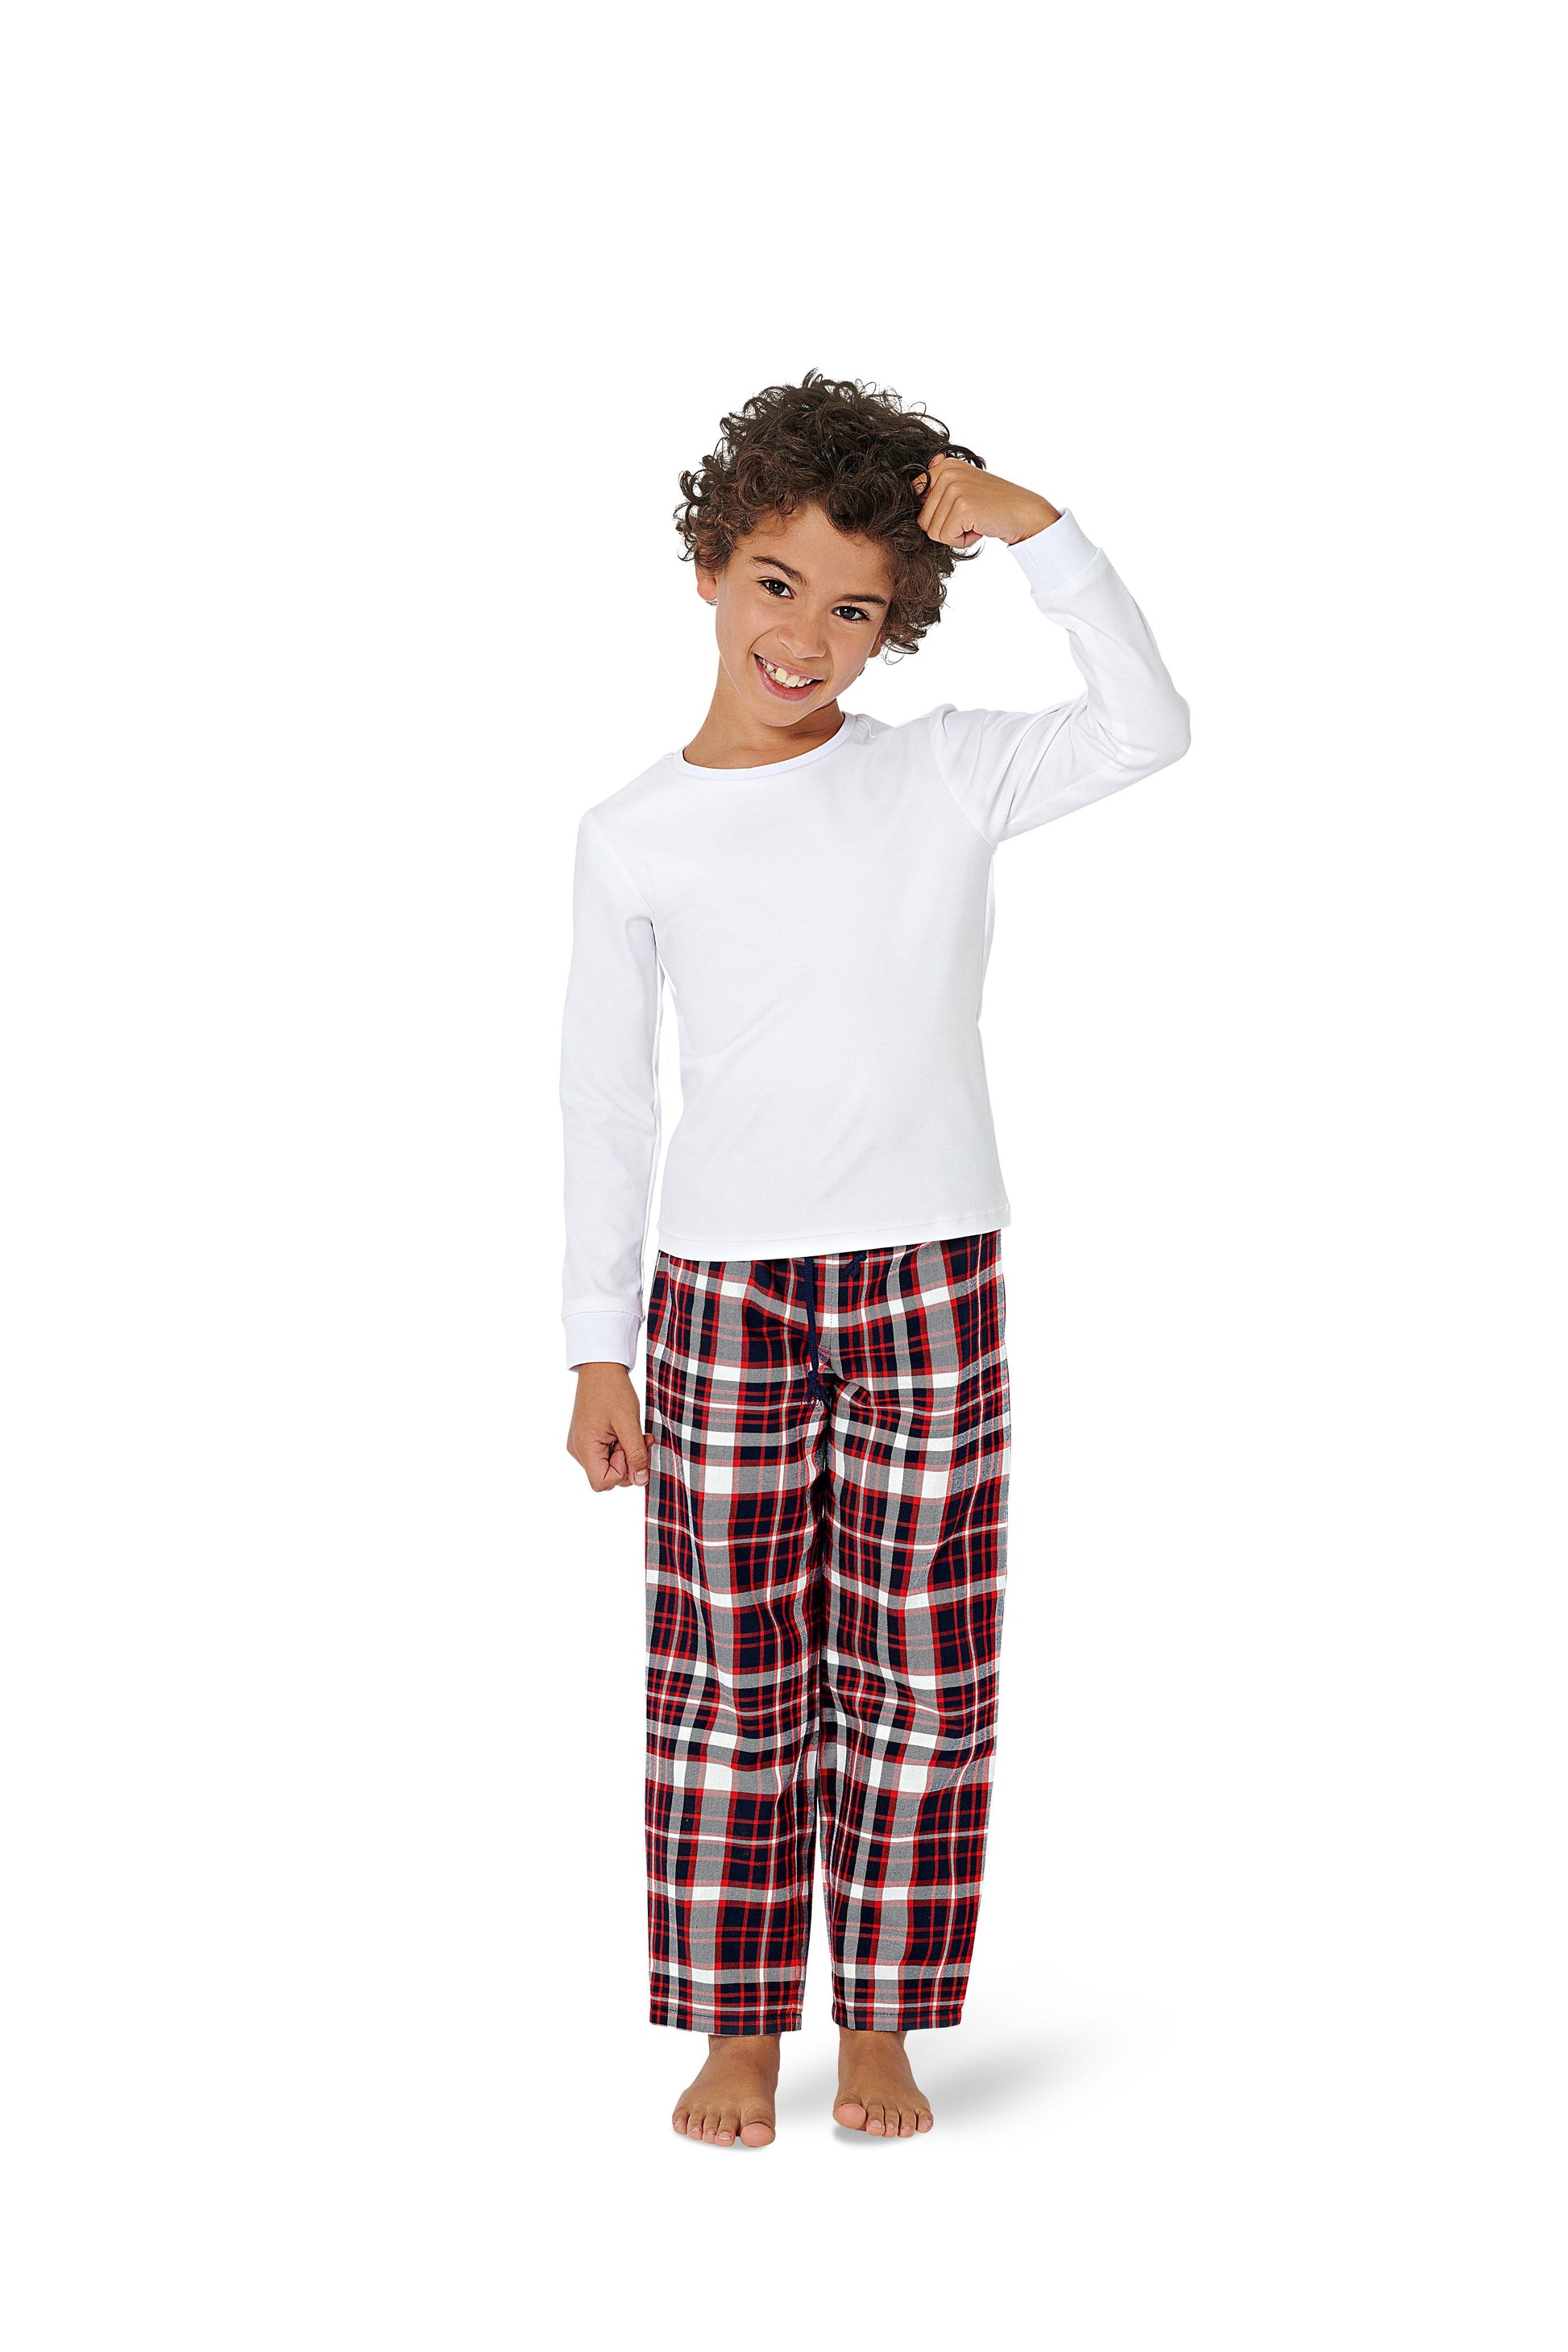 Symønster Burda 9250 - Bukser Pyjamas Trøje - Pige Dreng | Billede 1